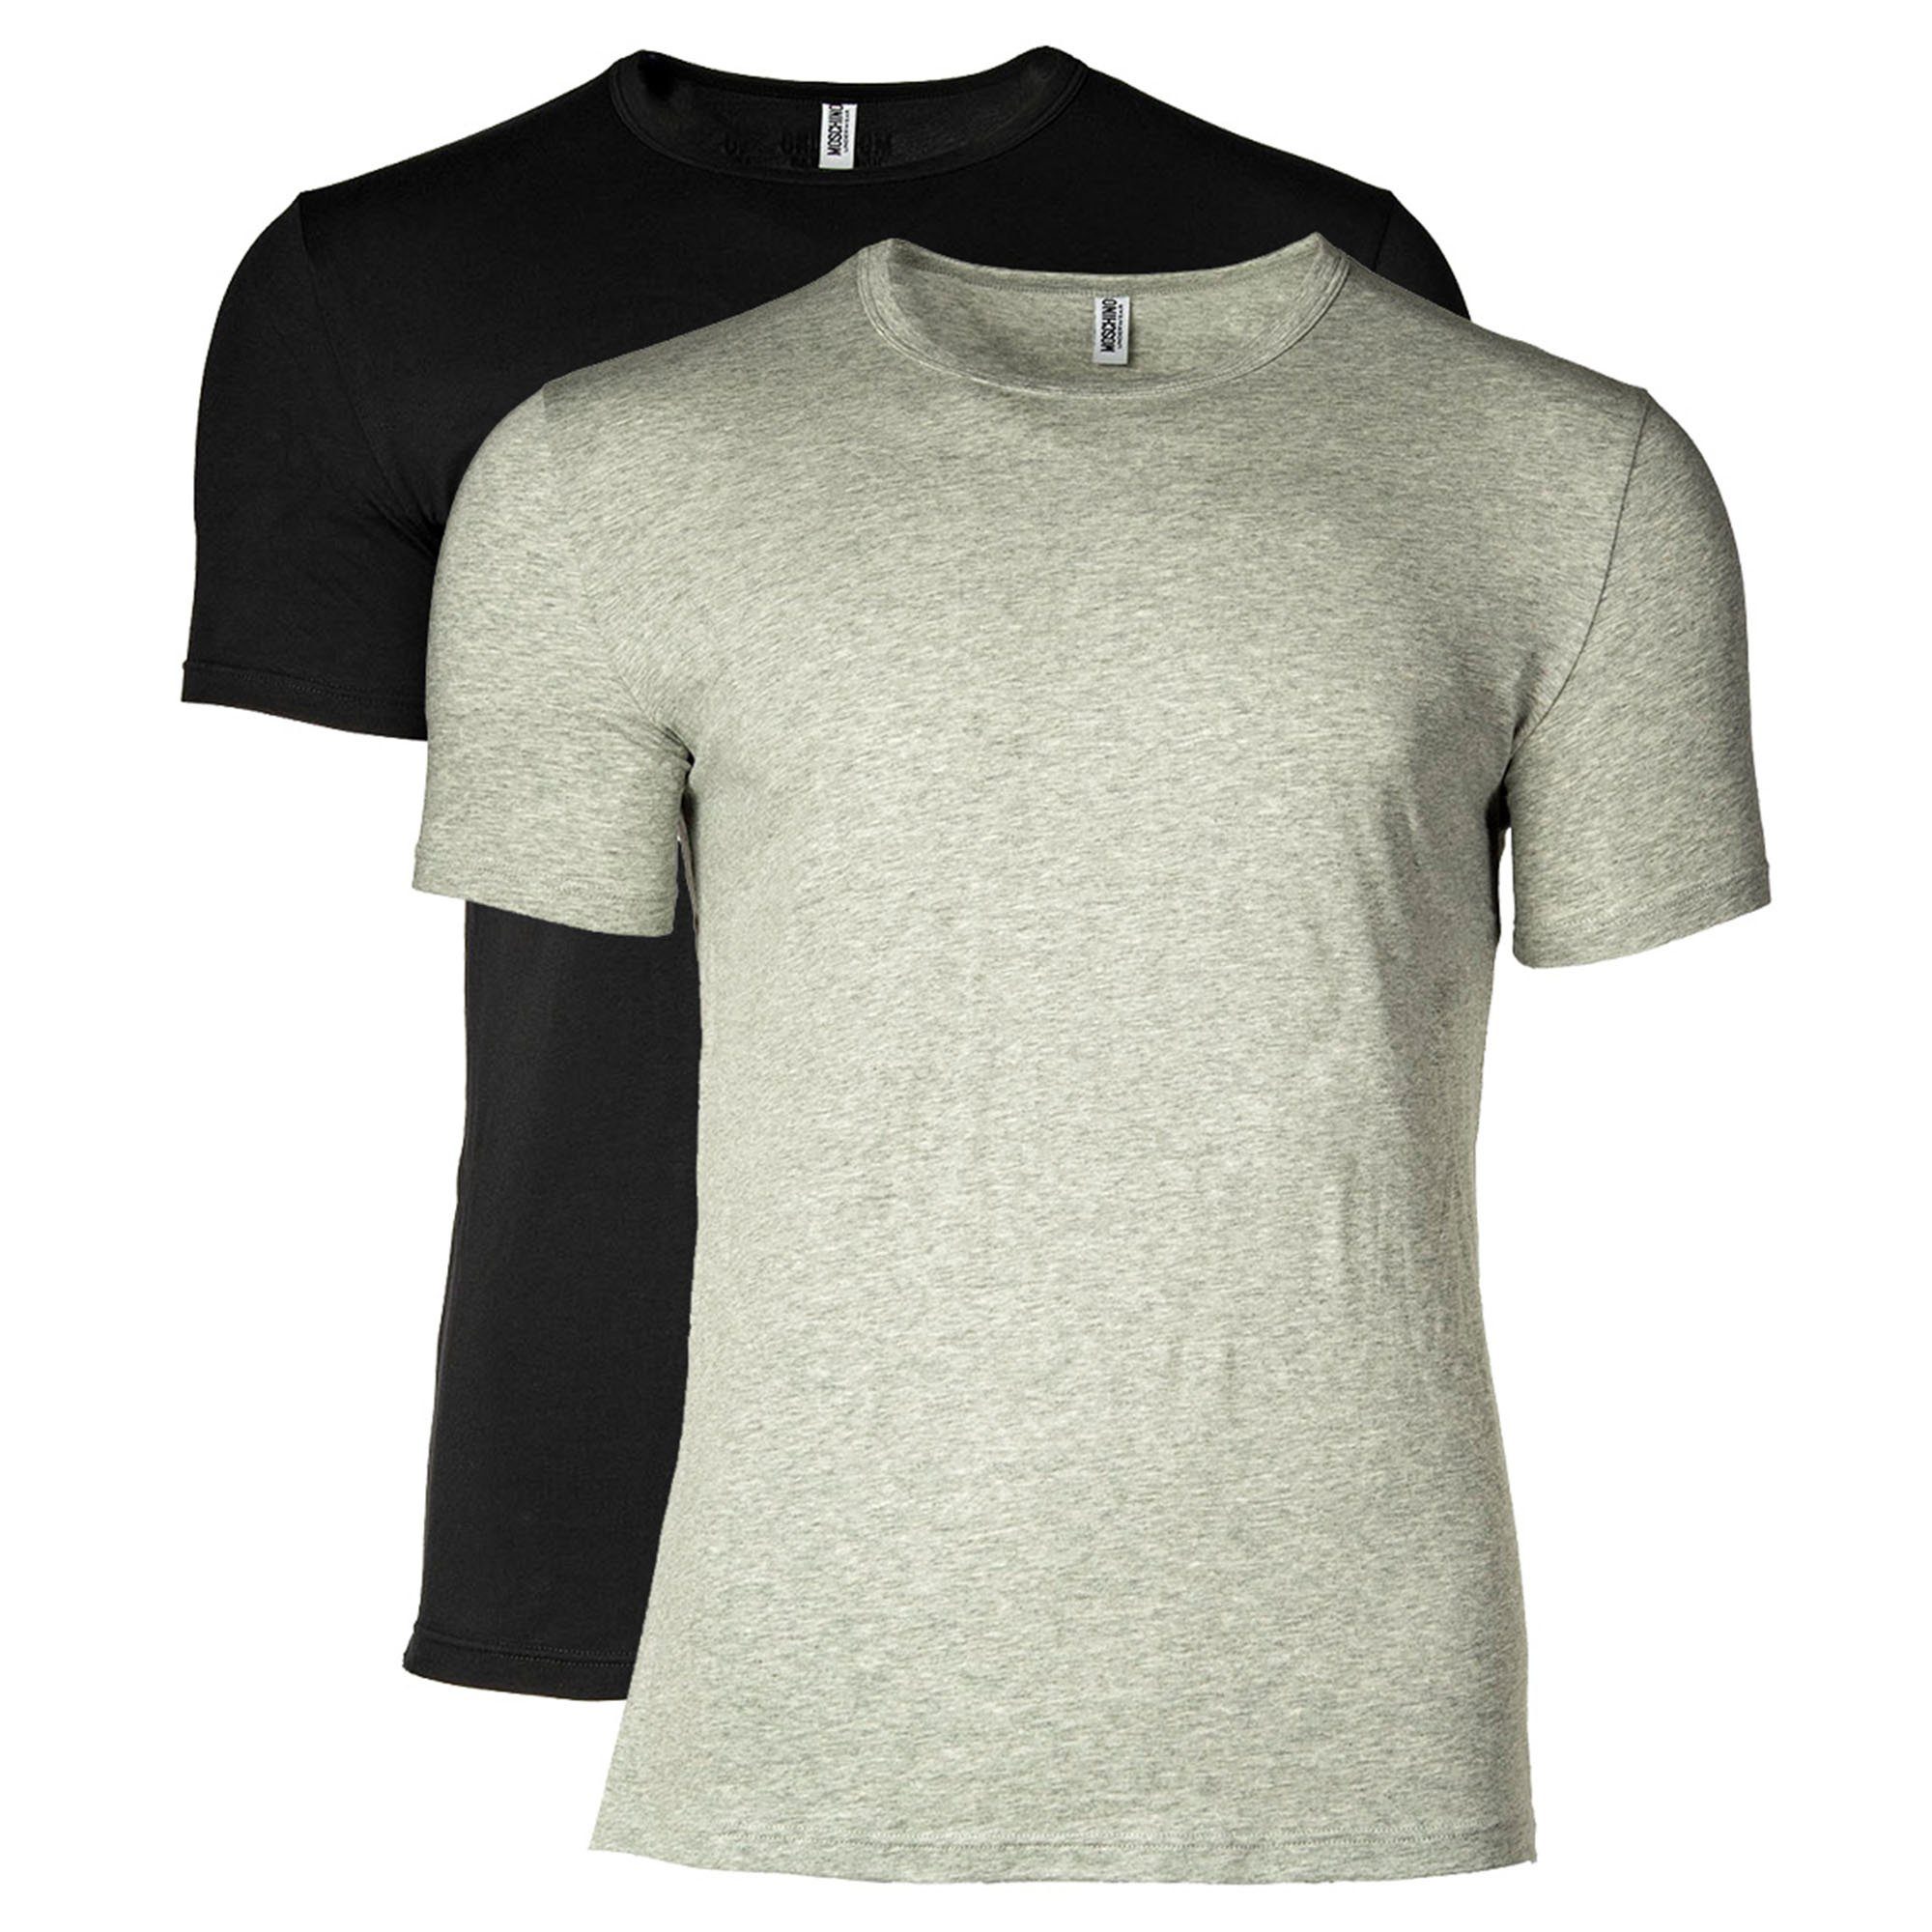 Neck, - T-Shirt Moschino Pack Rundhals Crew T-Shirt 2er Grau/Schwarz Herren